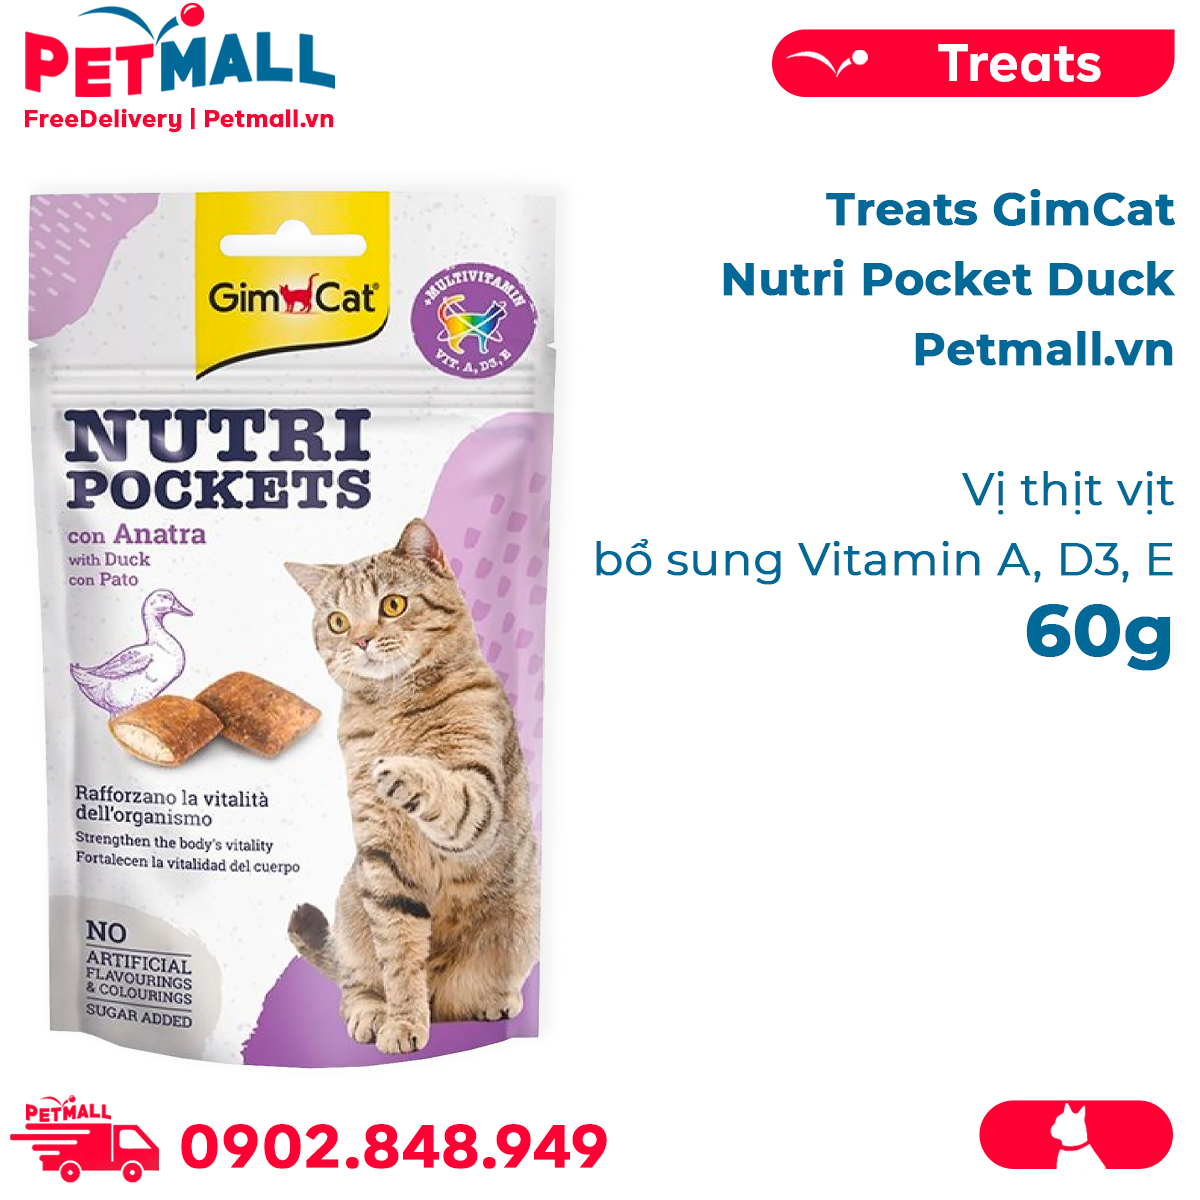 Bánh thưởng GimCat Nutri Pocket Duck 60g - Vịt thịt vịt, bổ sung Vitamin A,D3,E Petmall thumbnail